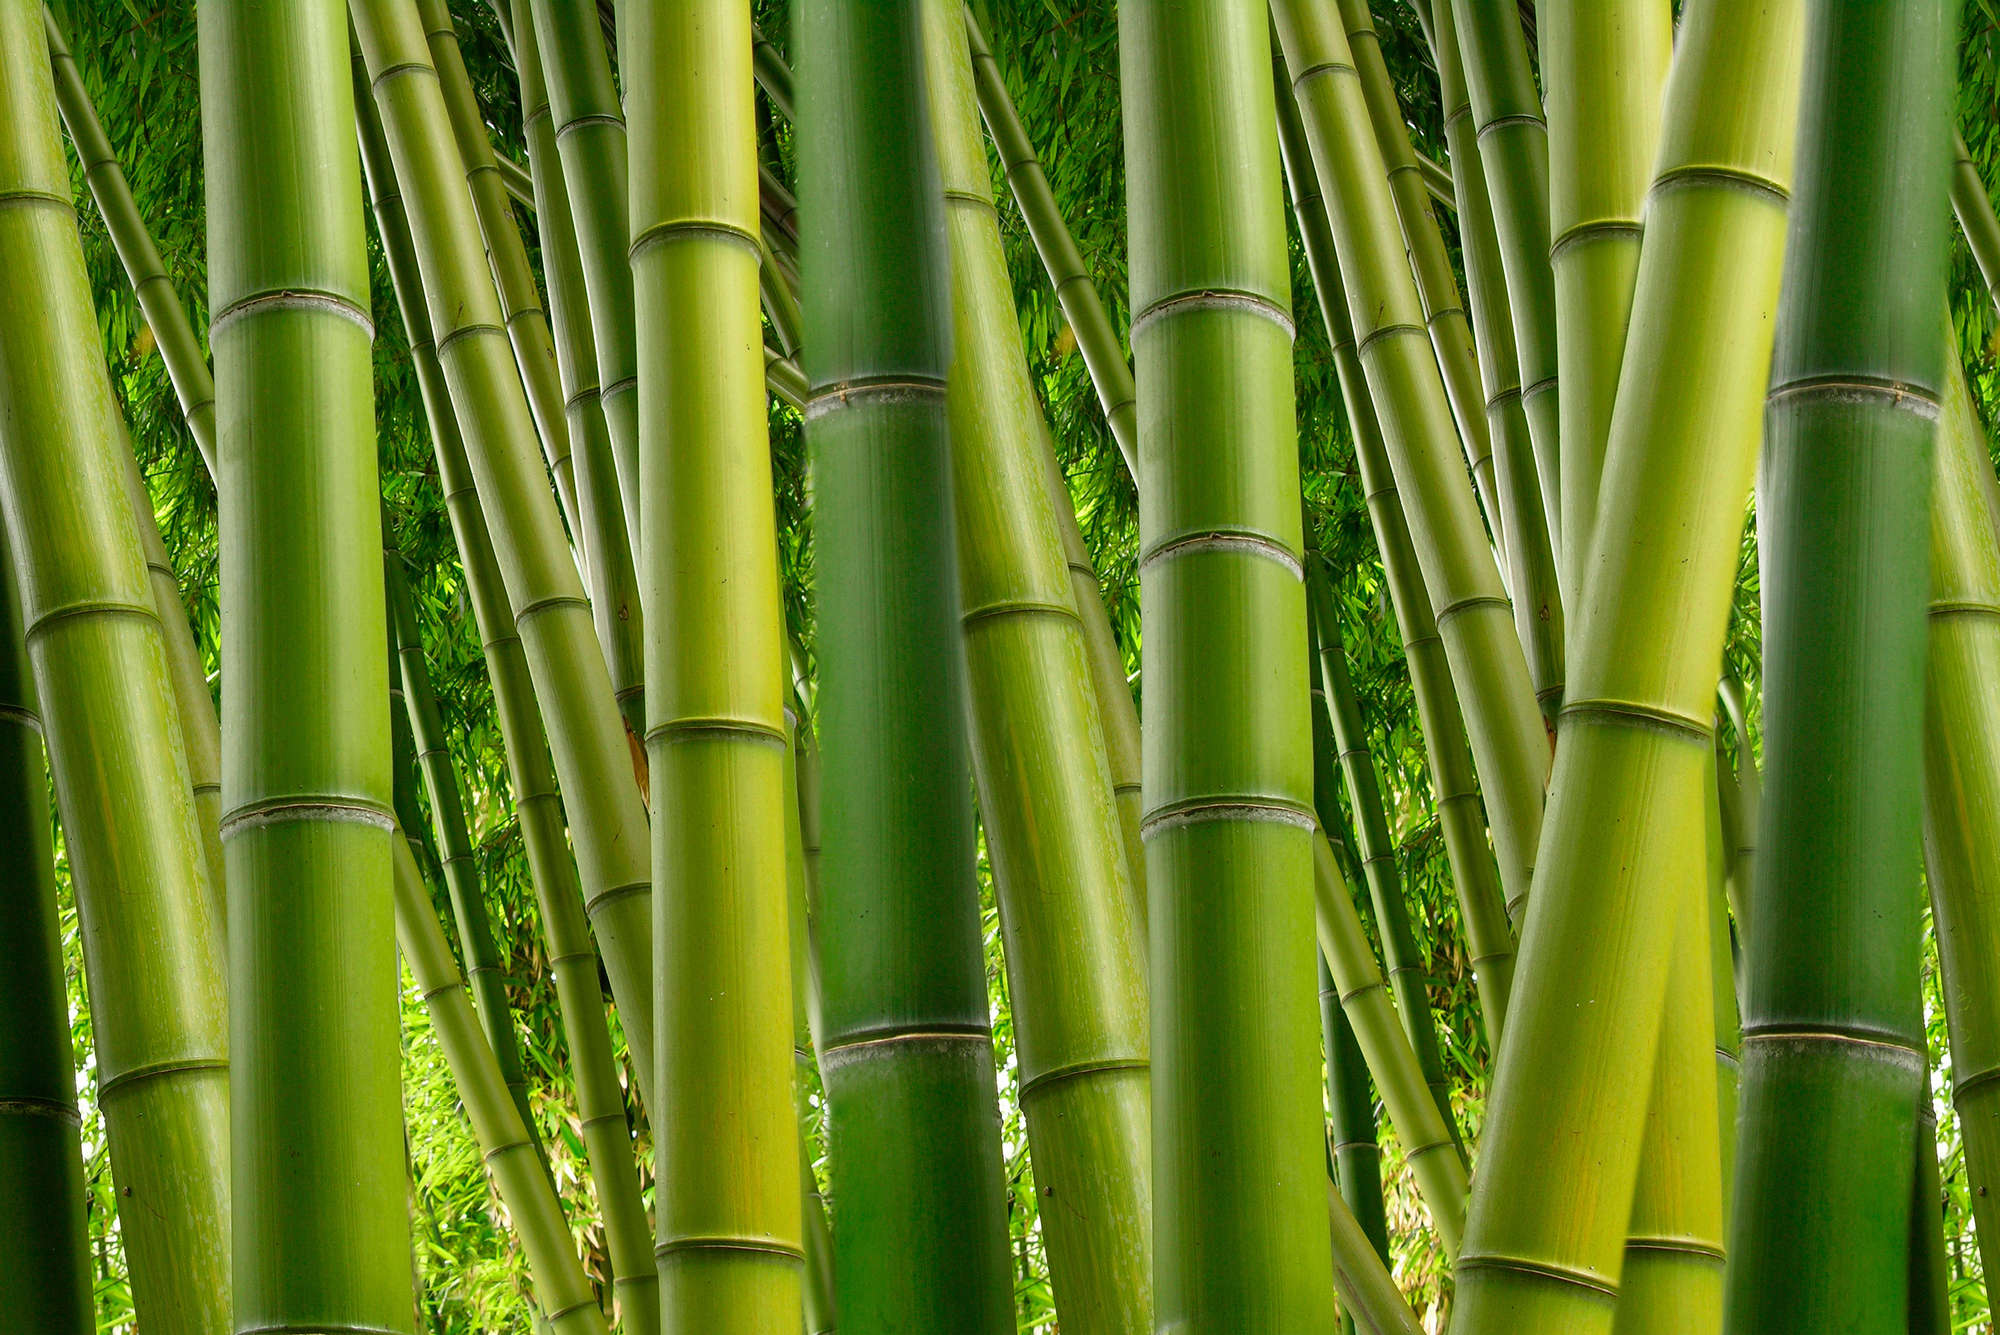             Papel pintado Naturaleza Motivo de bosque de bambú sobre tejido no tejido liso mate
        